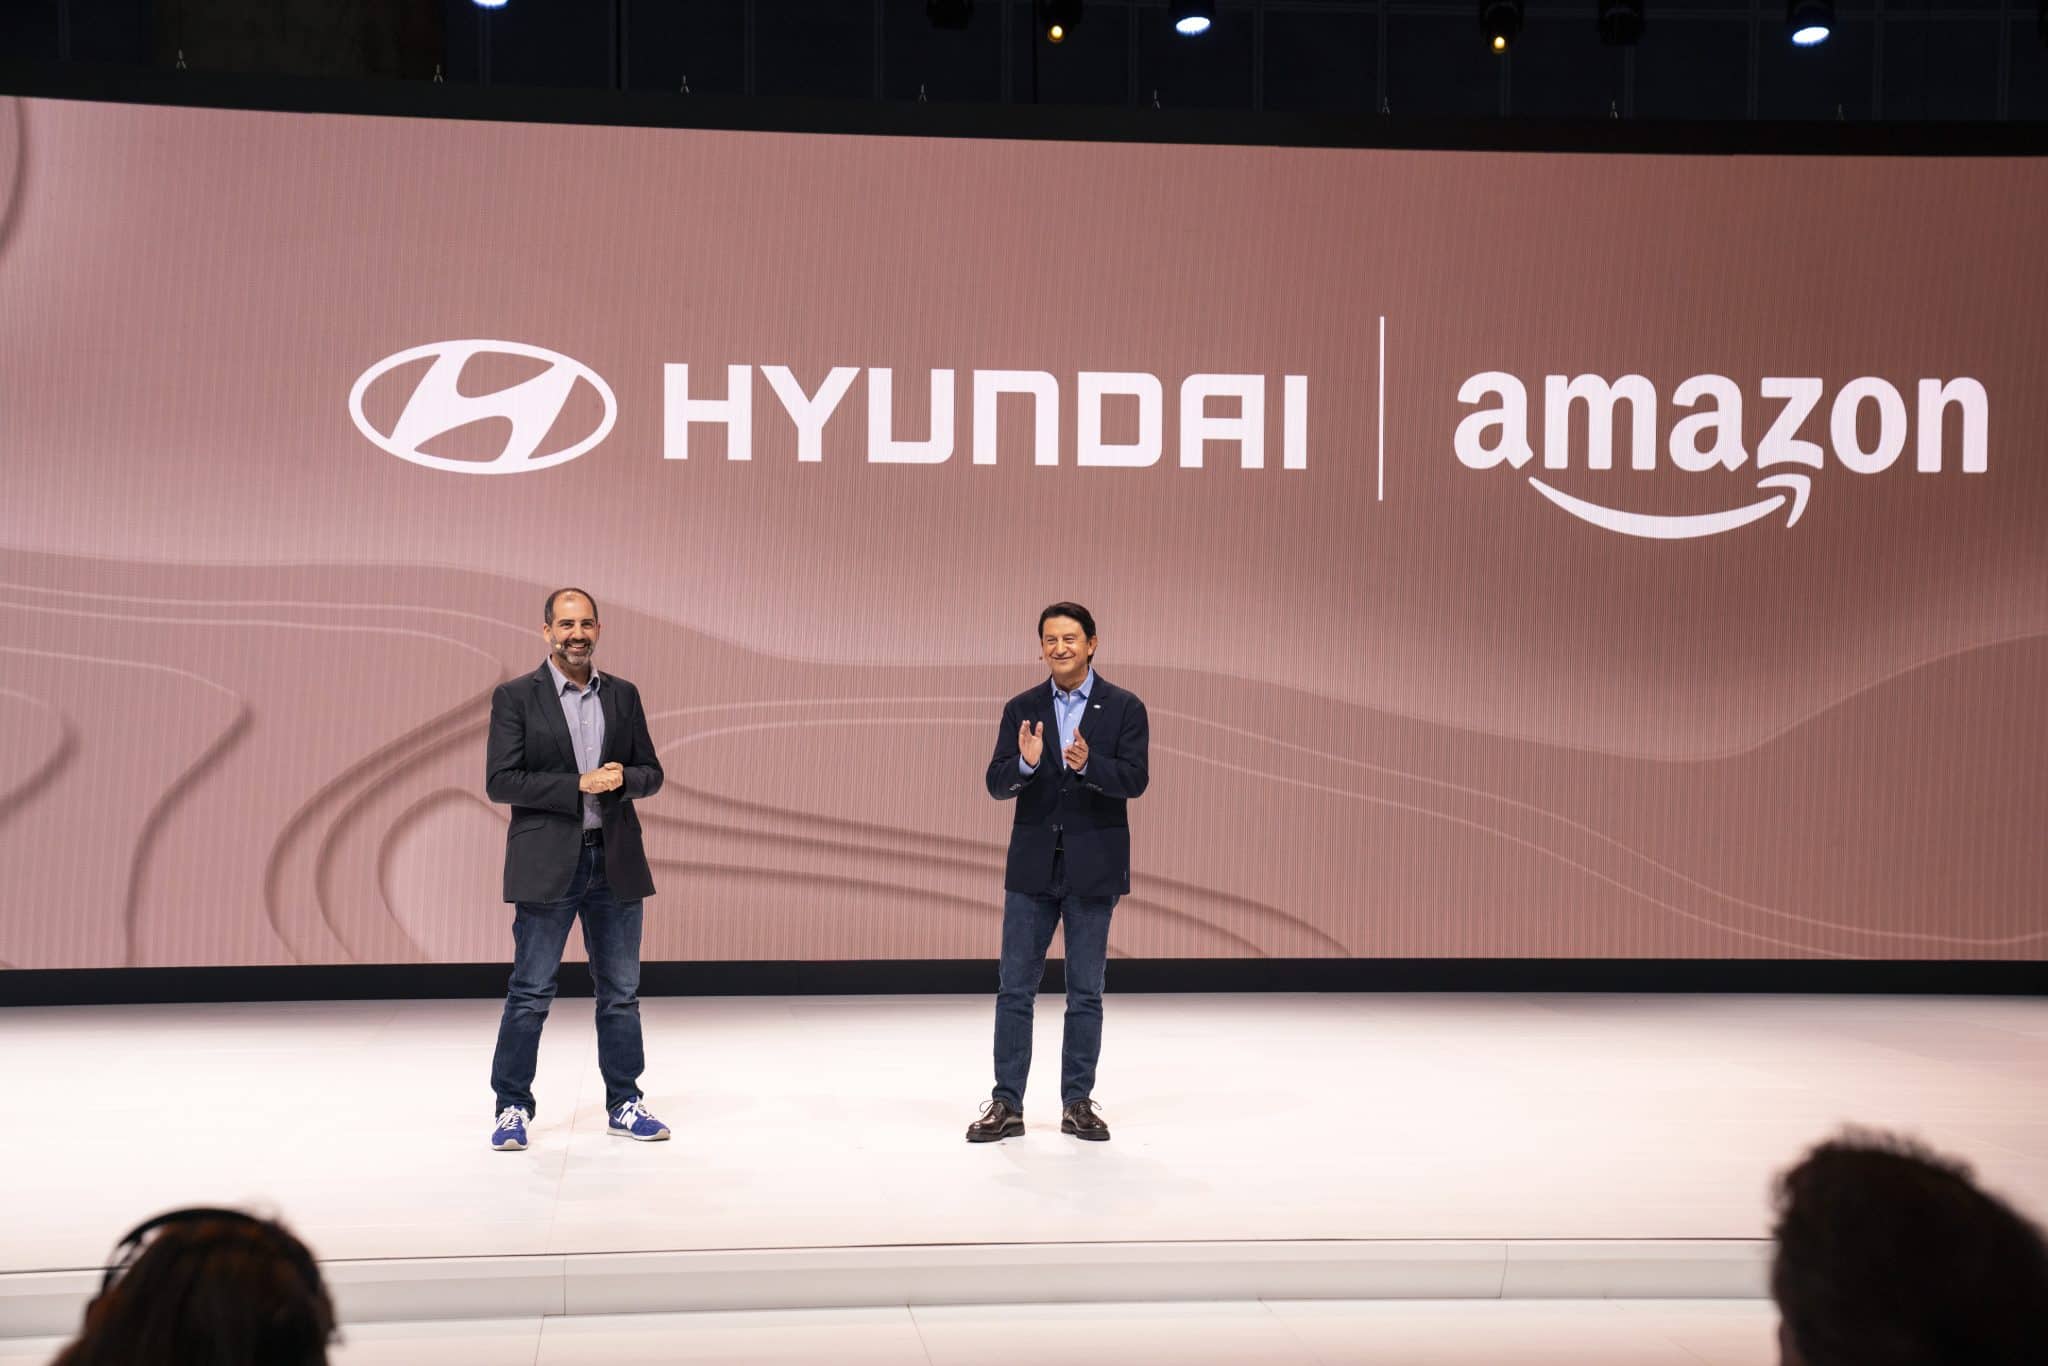 Les modèles Hyundai seront équipés d'Alexa, l'assistant d'Amazon